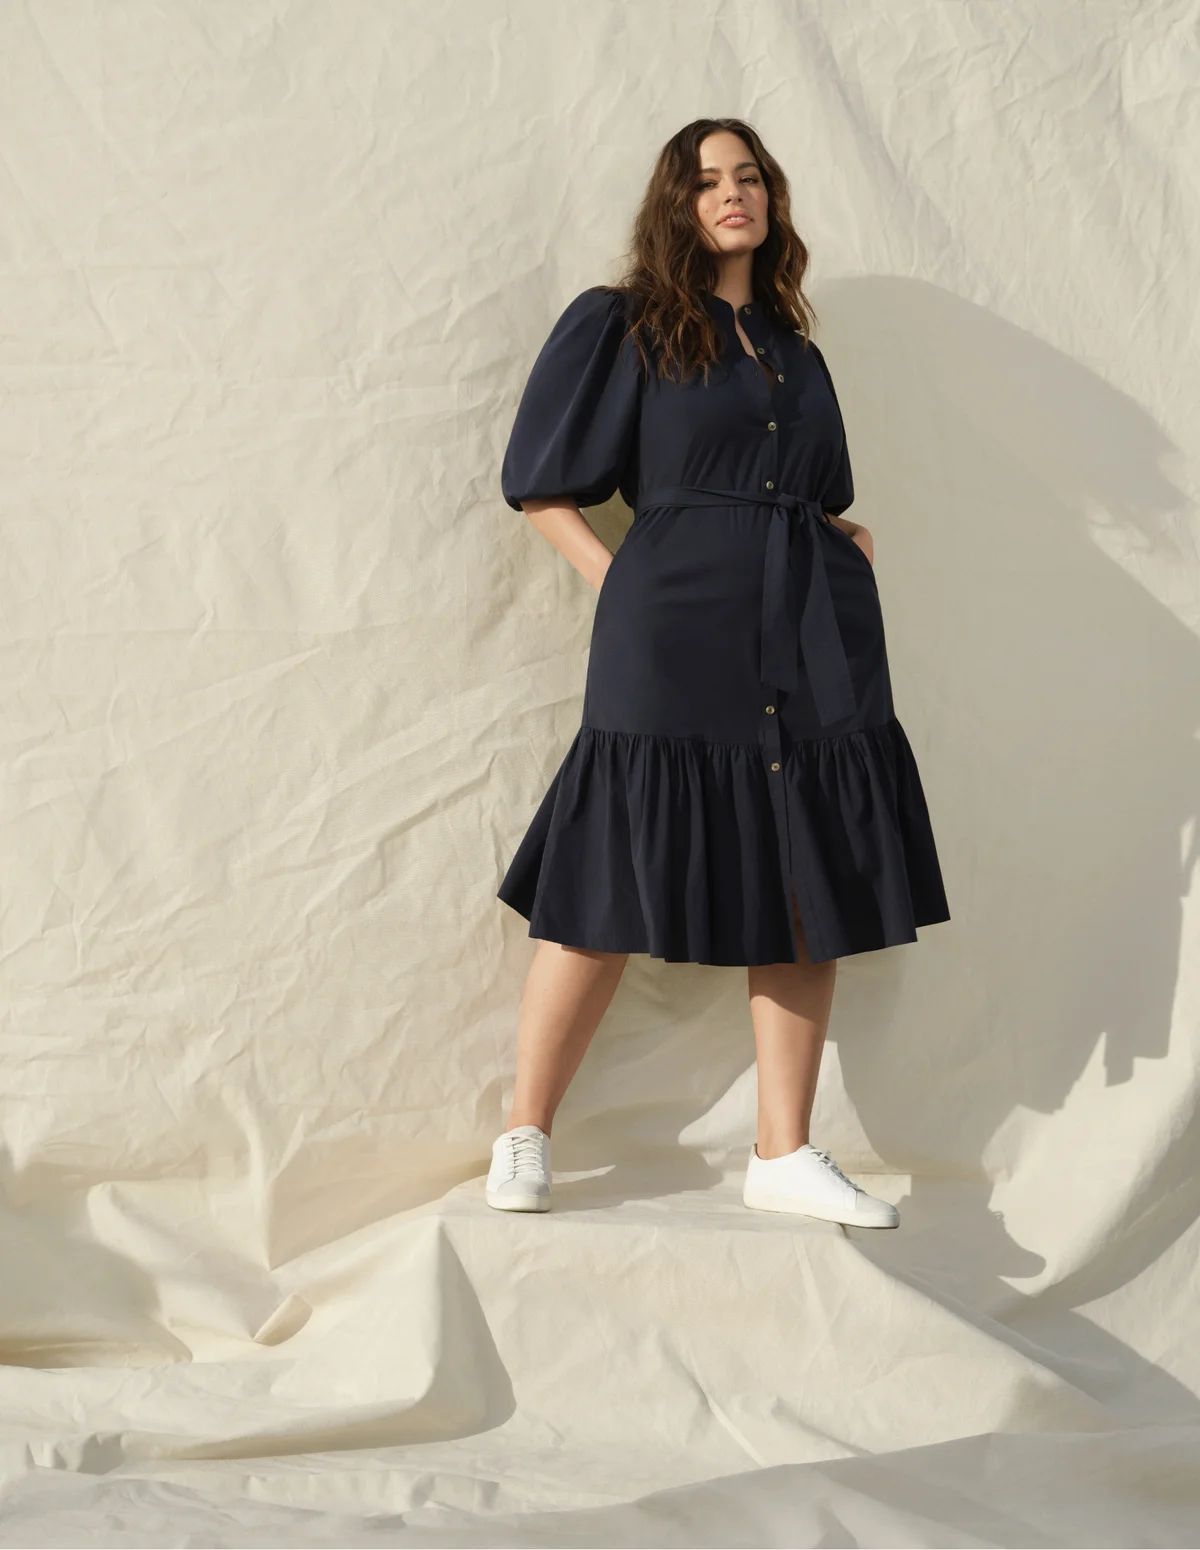 Вдохновляемся стилем Эшли Грэм: 5 летних платьев для девушек plus size, которые визуально стройнят